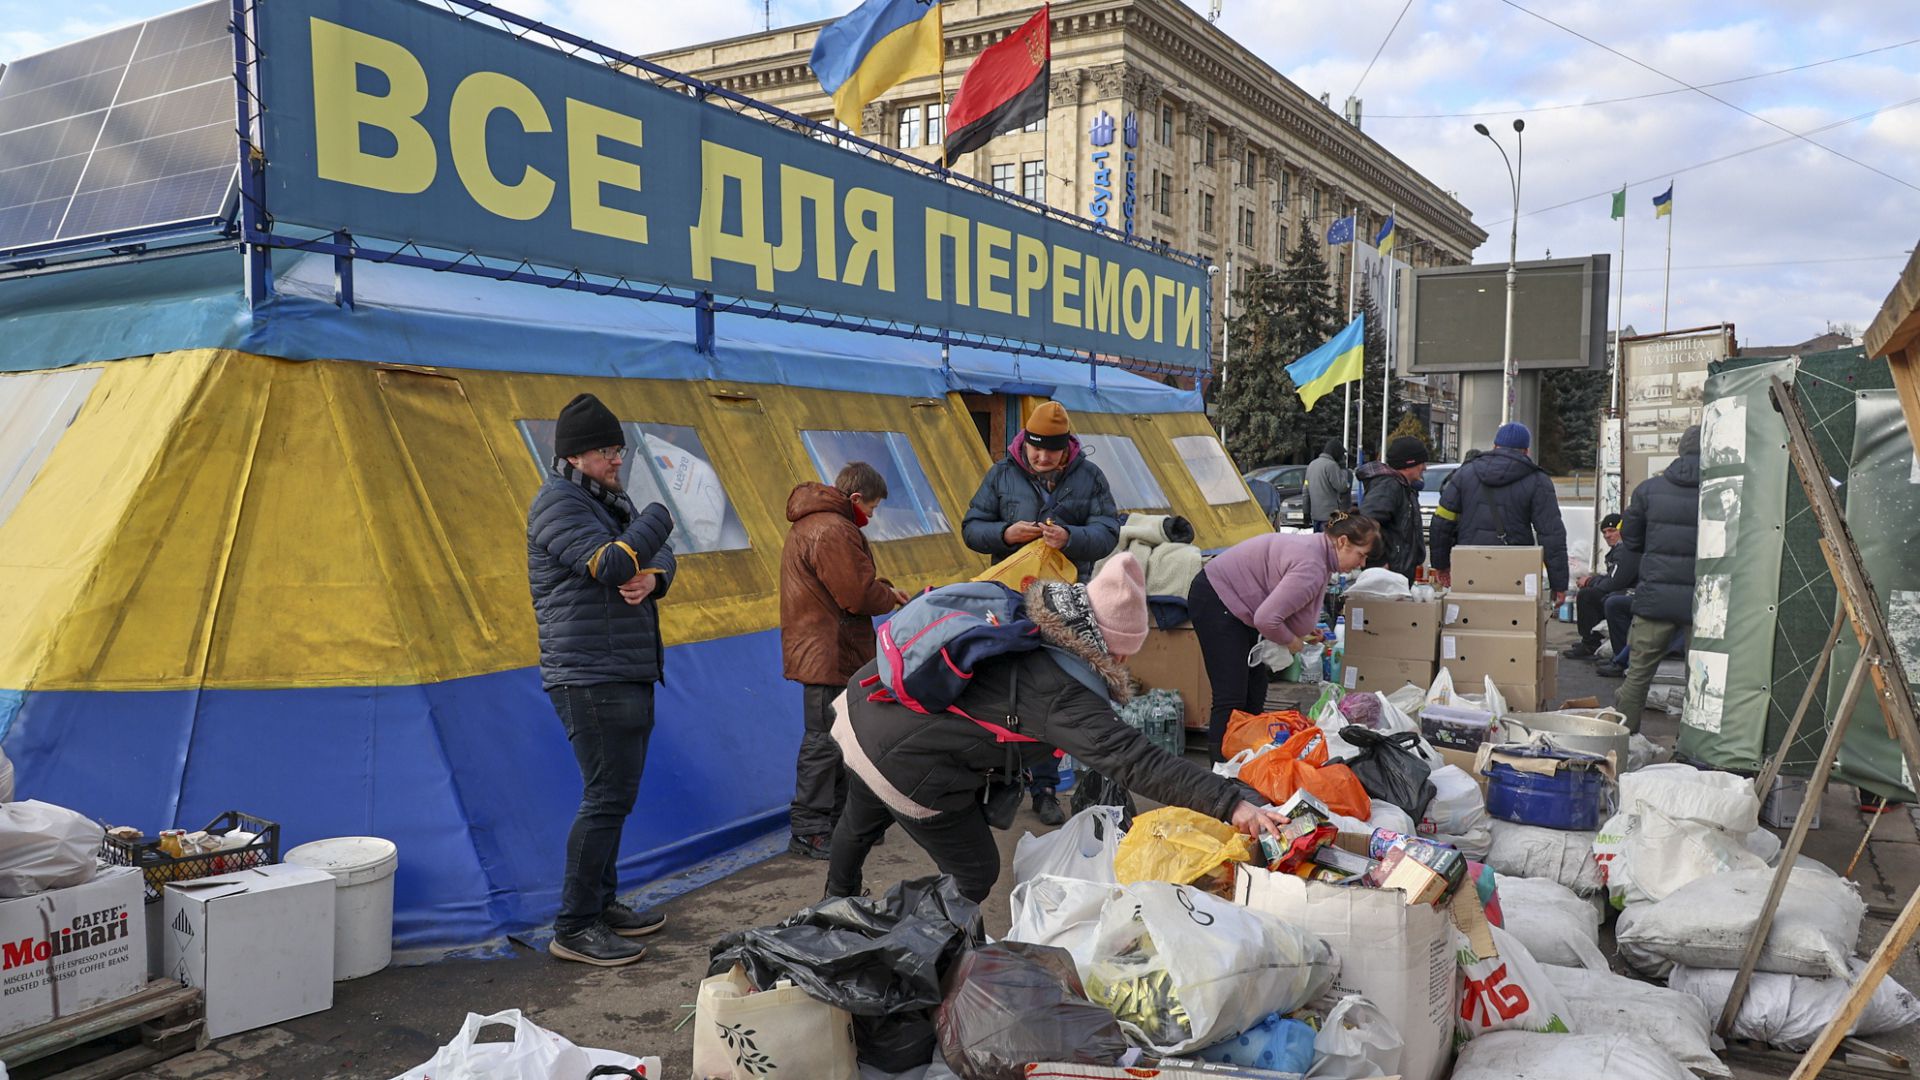 Lage in Charkiw: "Viele Verwundete in der Stadt"